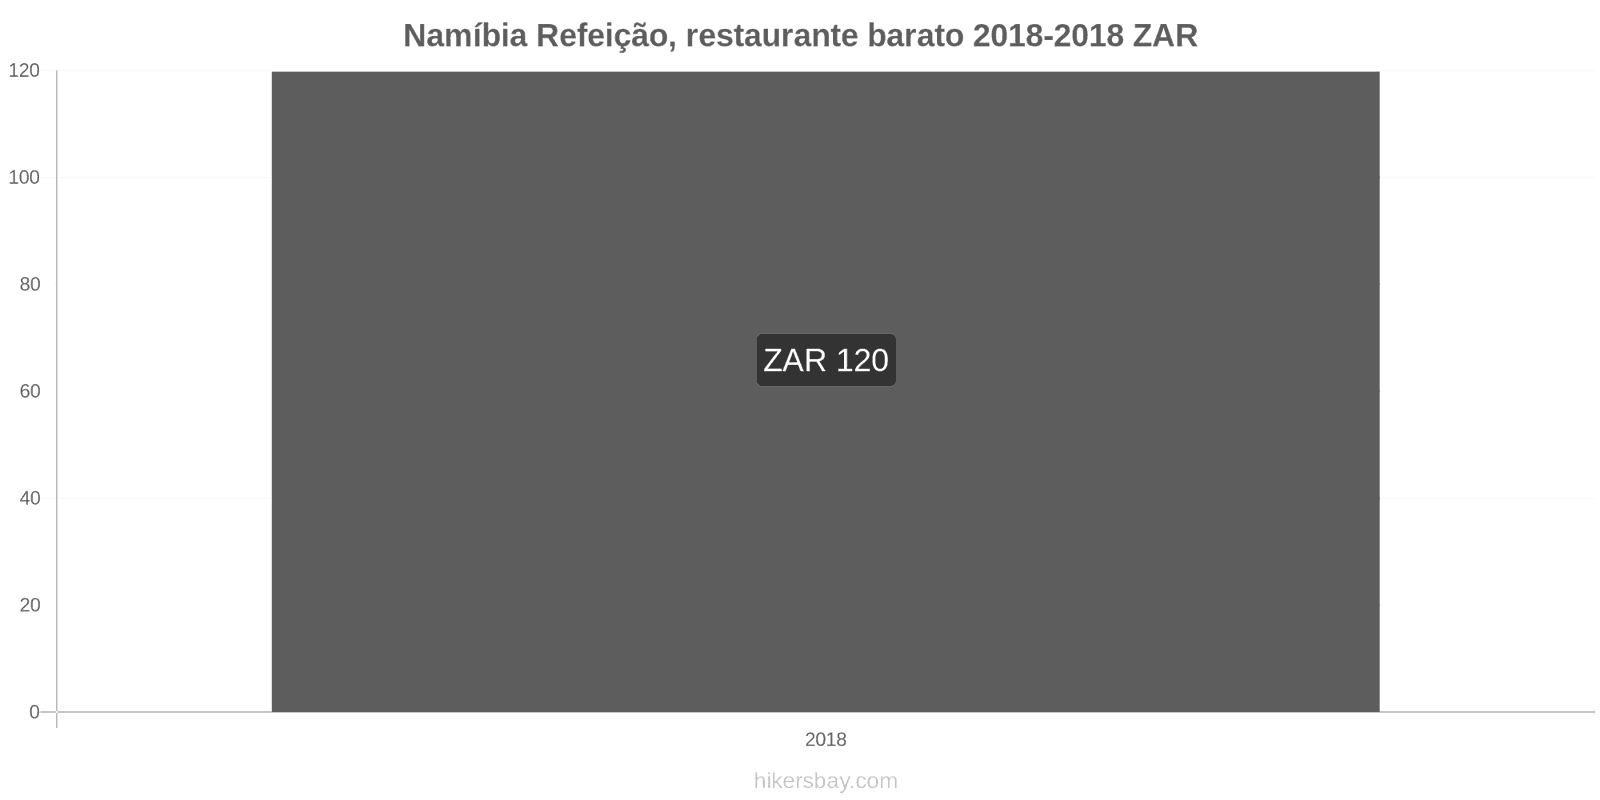 Namíbia mudanças de preços Refeição em um restaurante econômico hikersbay.com